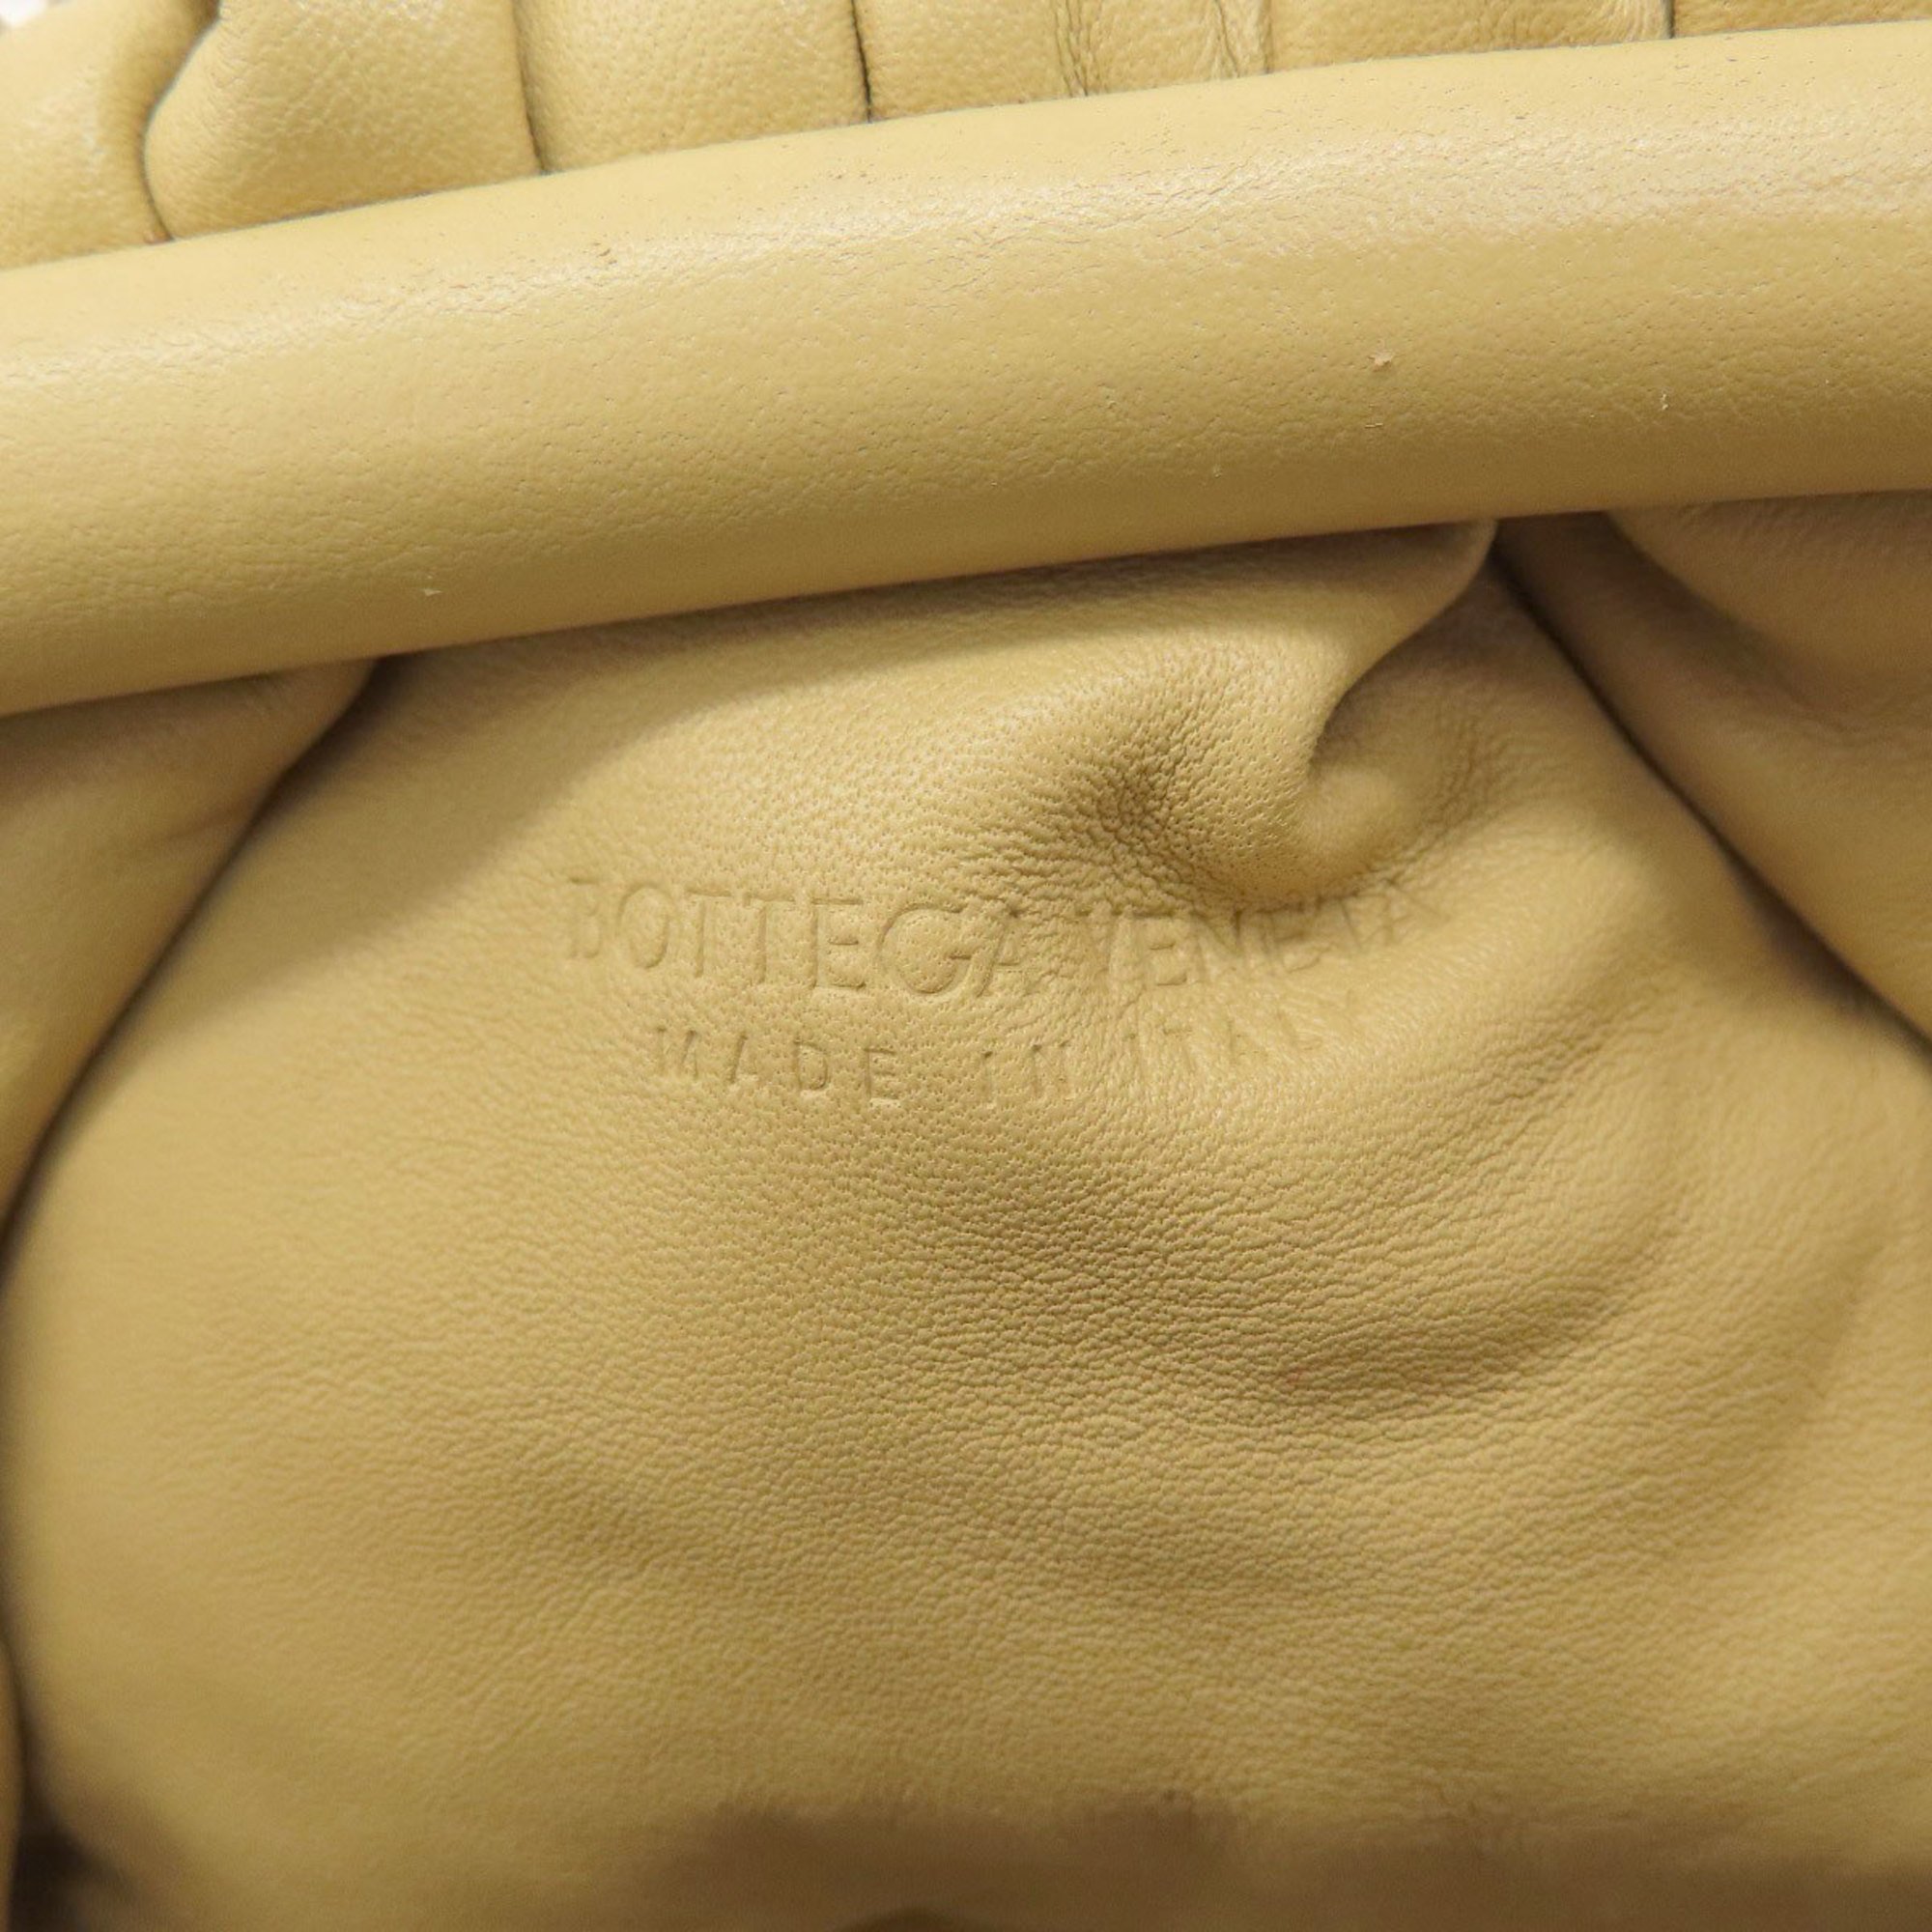 Bottega Veneta Shoulder Bag Calf Leather Women's